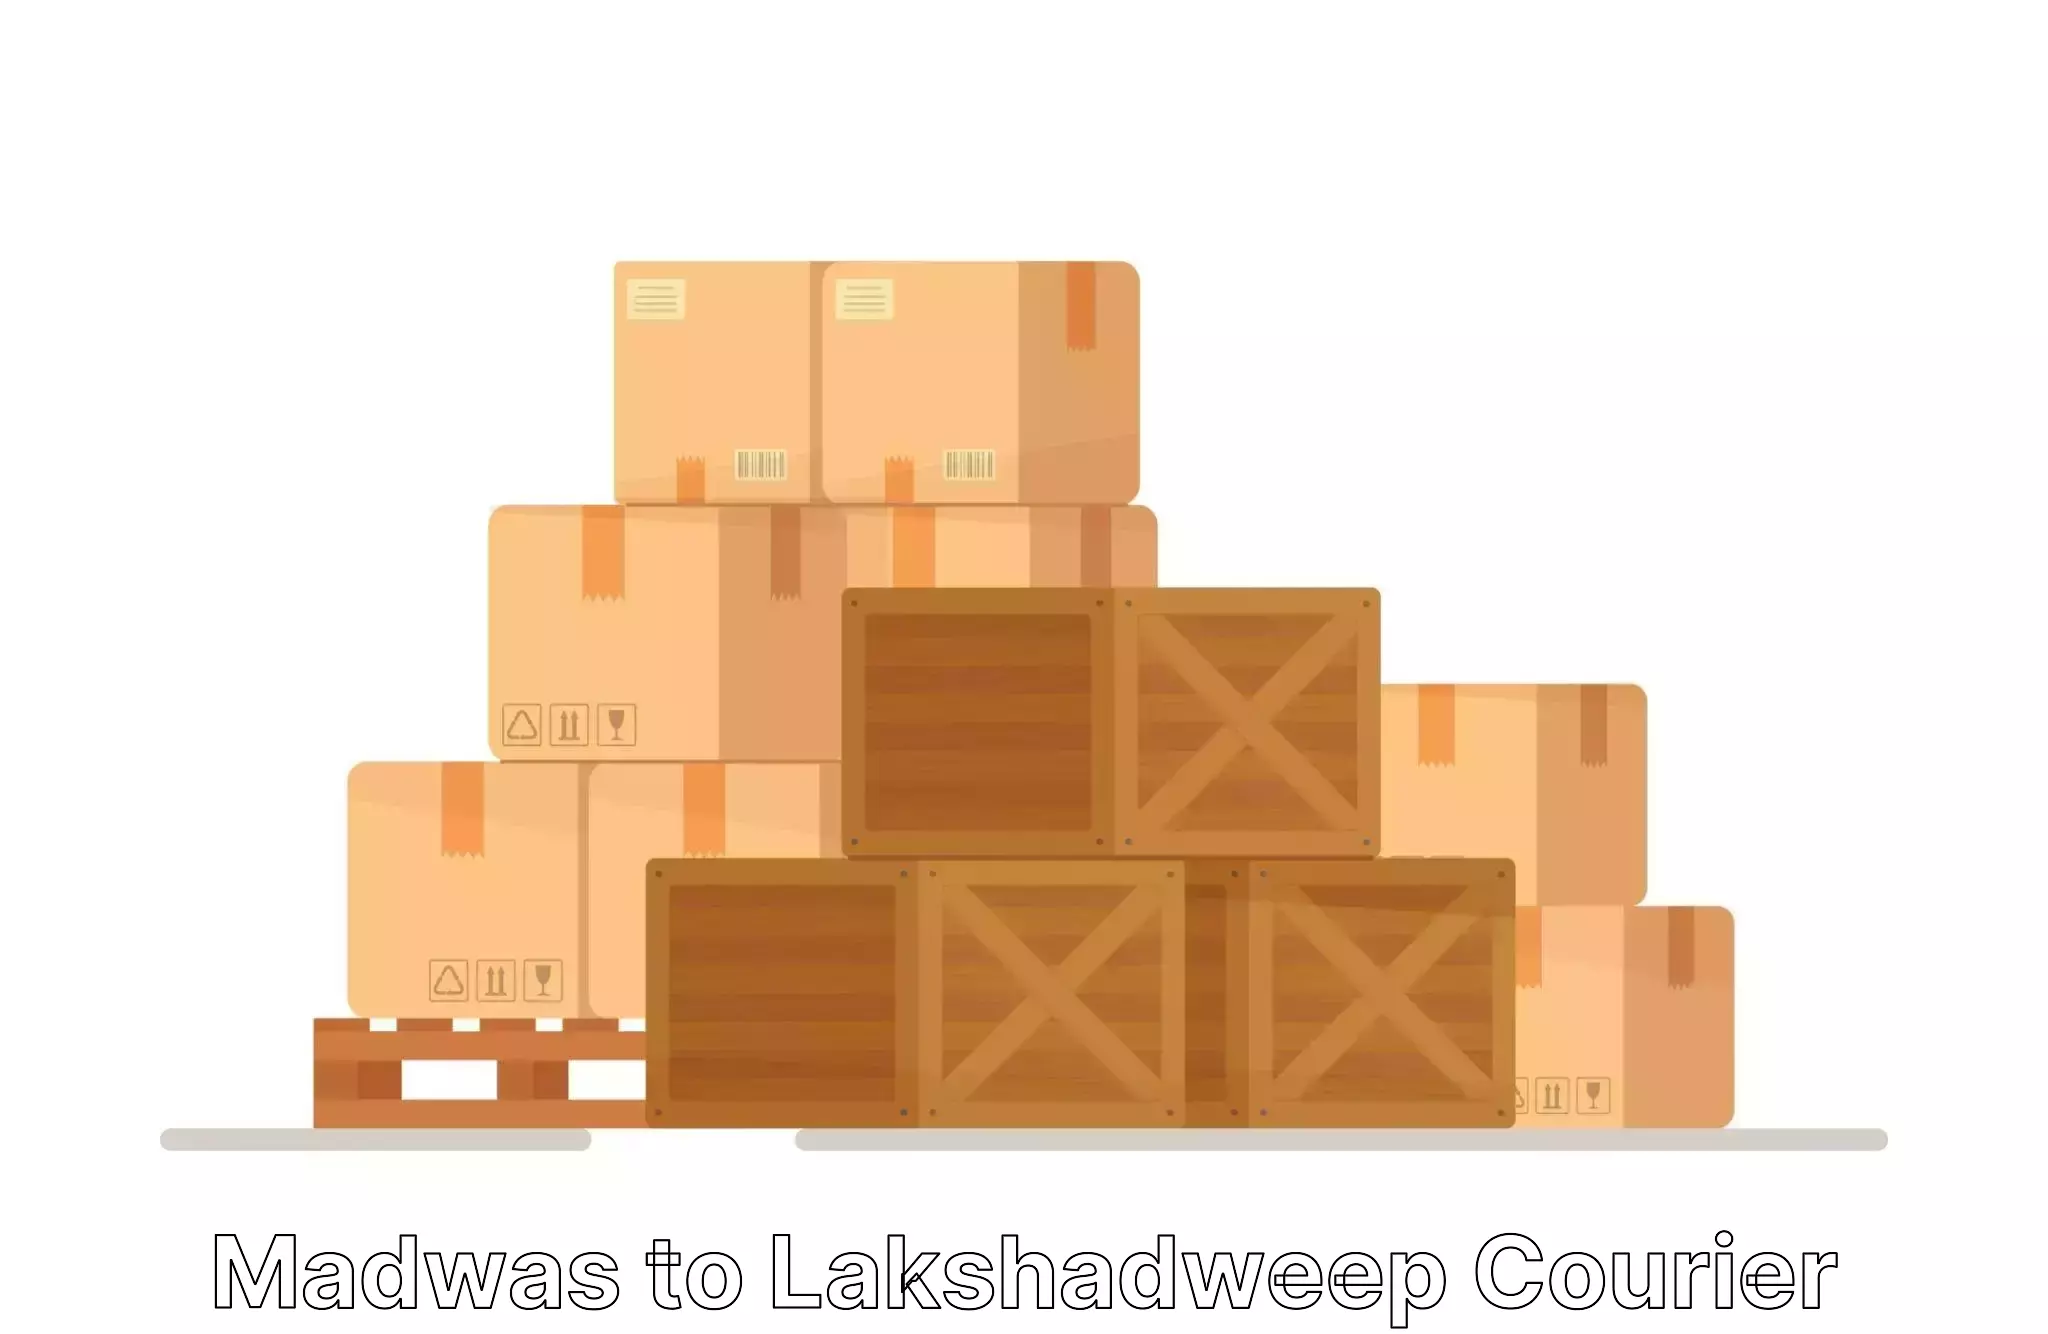 Furniture transport service Madwas to Lakshadweep